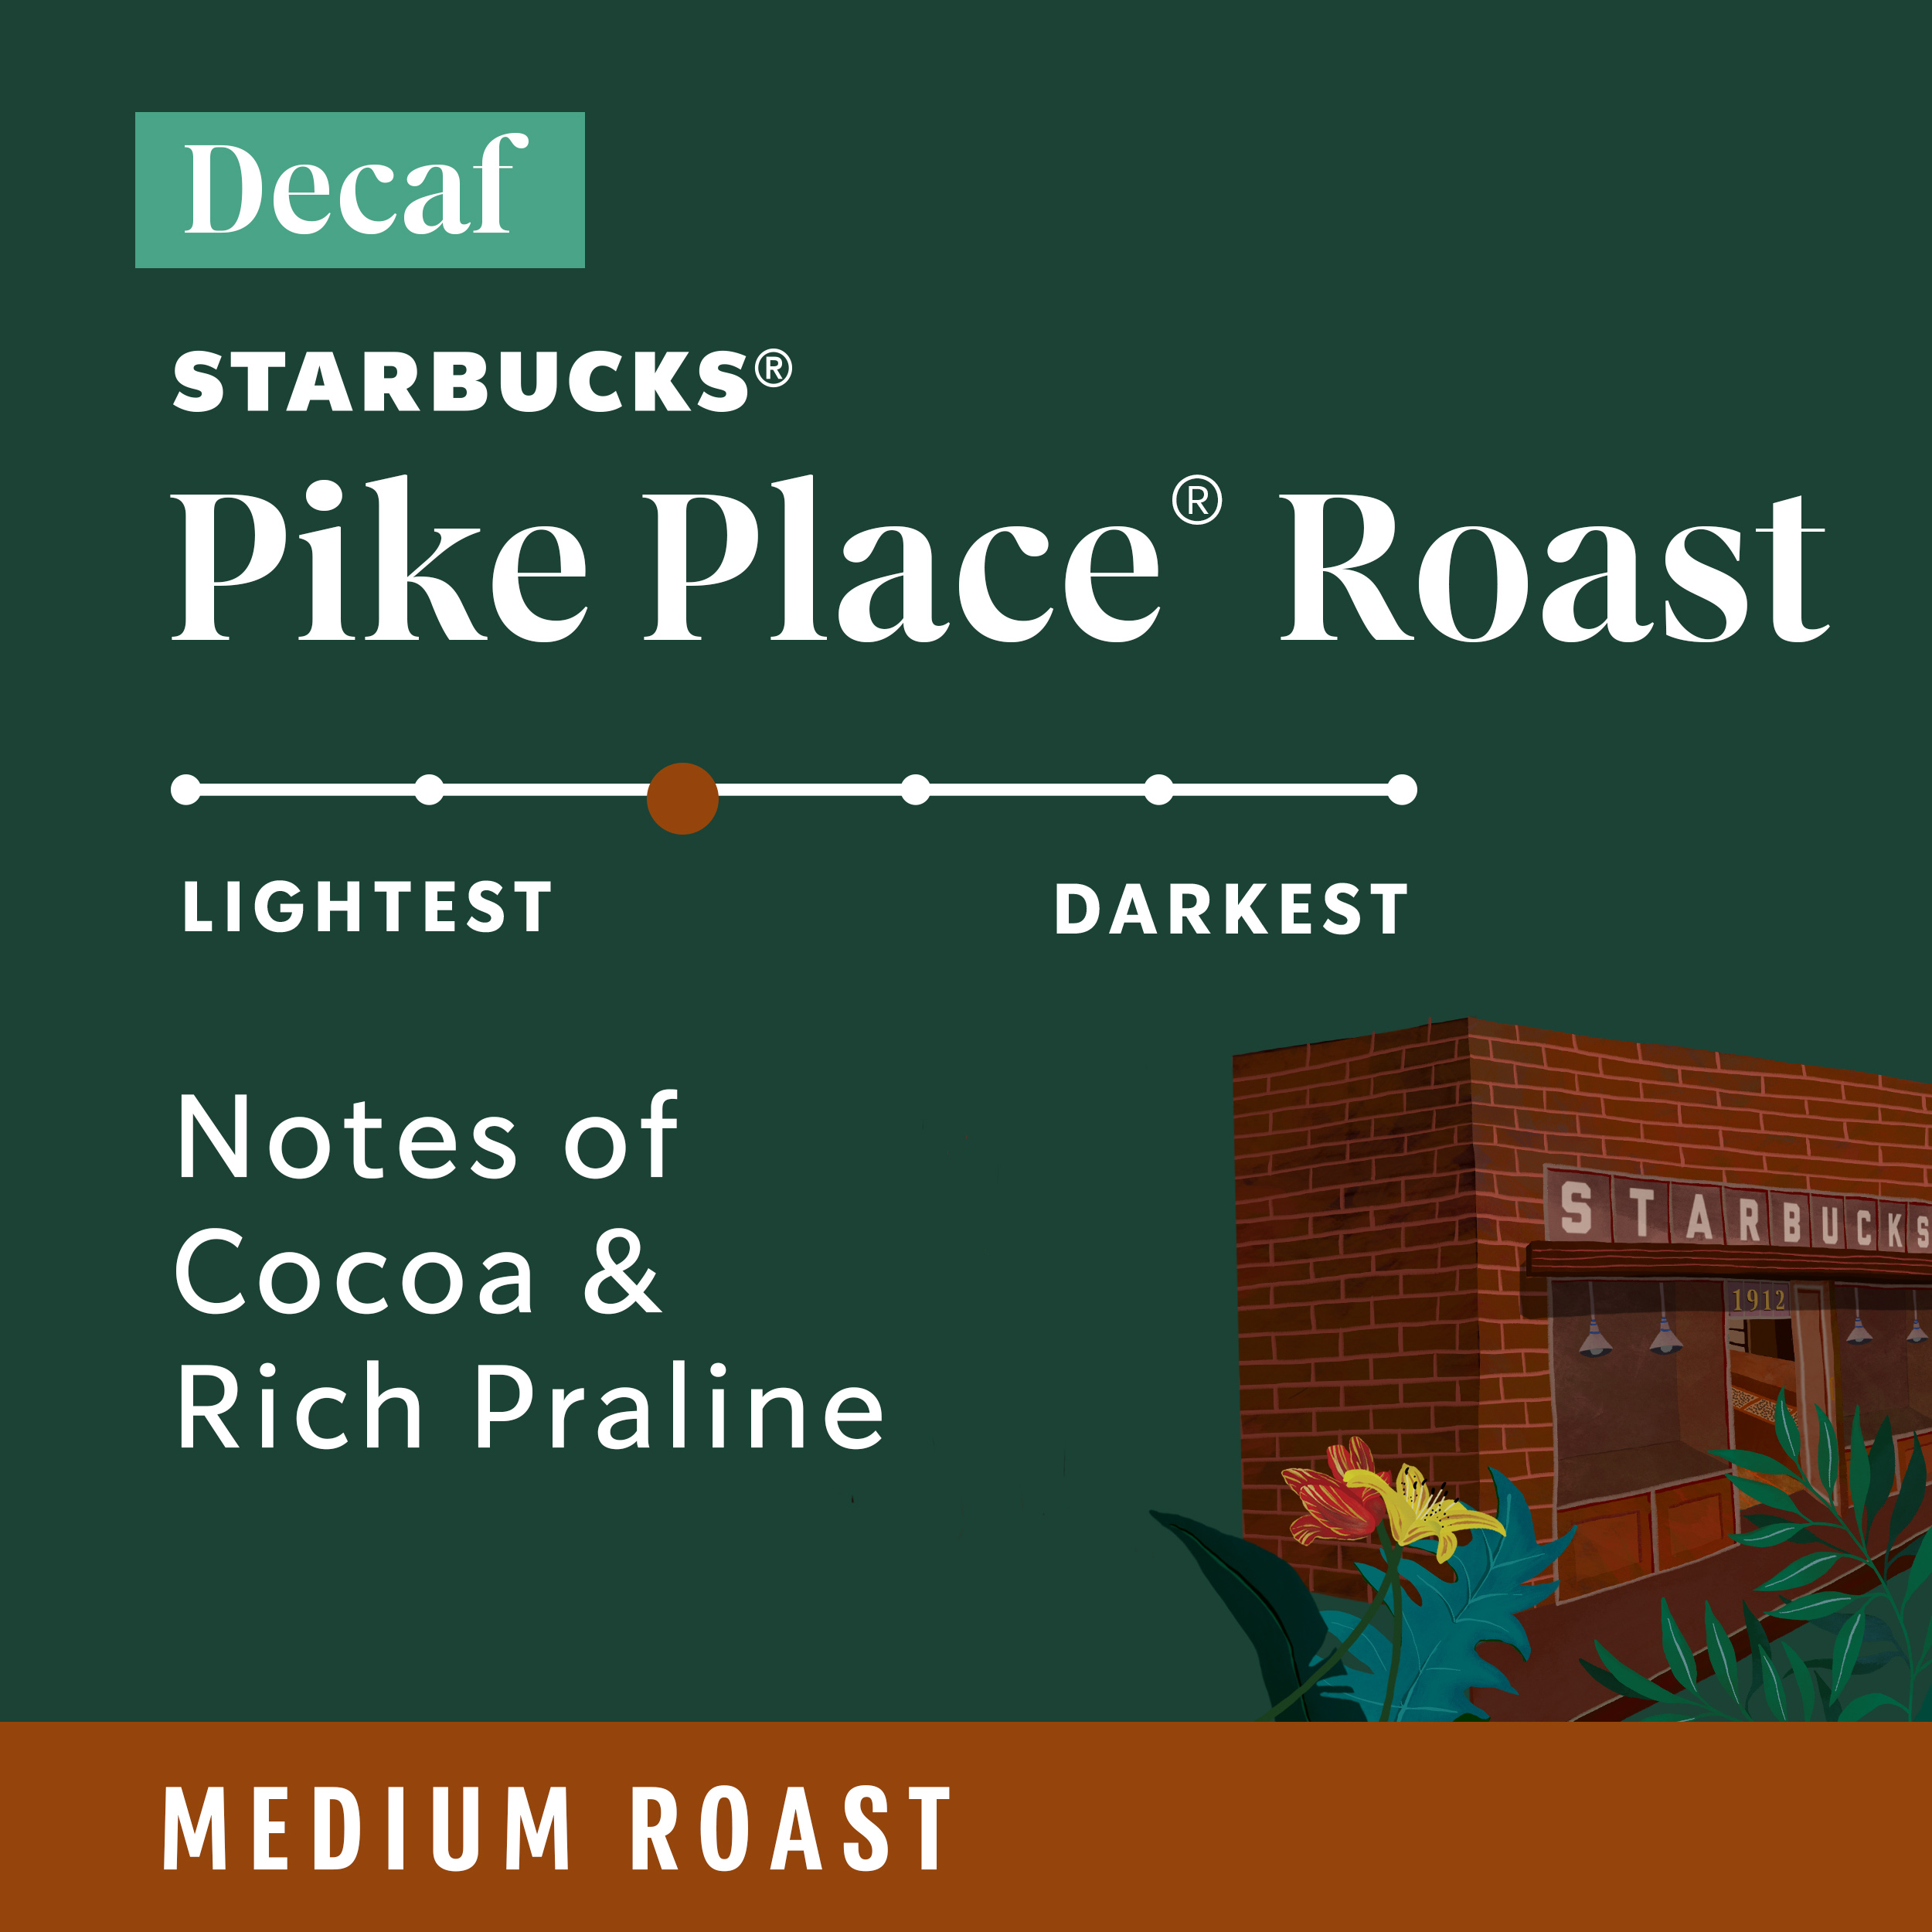 Starbucks Decaf Pike Place Roast, Ground Coffee, Medium Roast, 7 oz - image 3 of 8